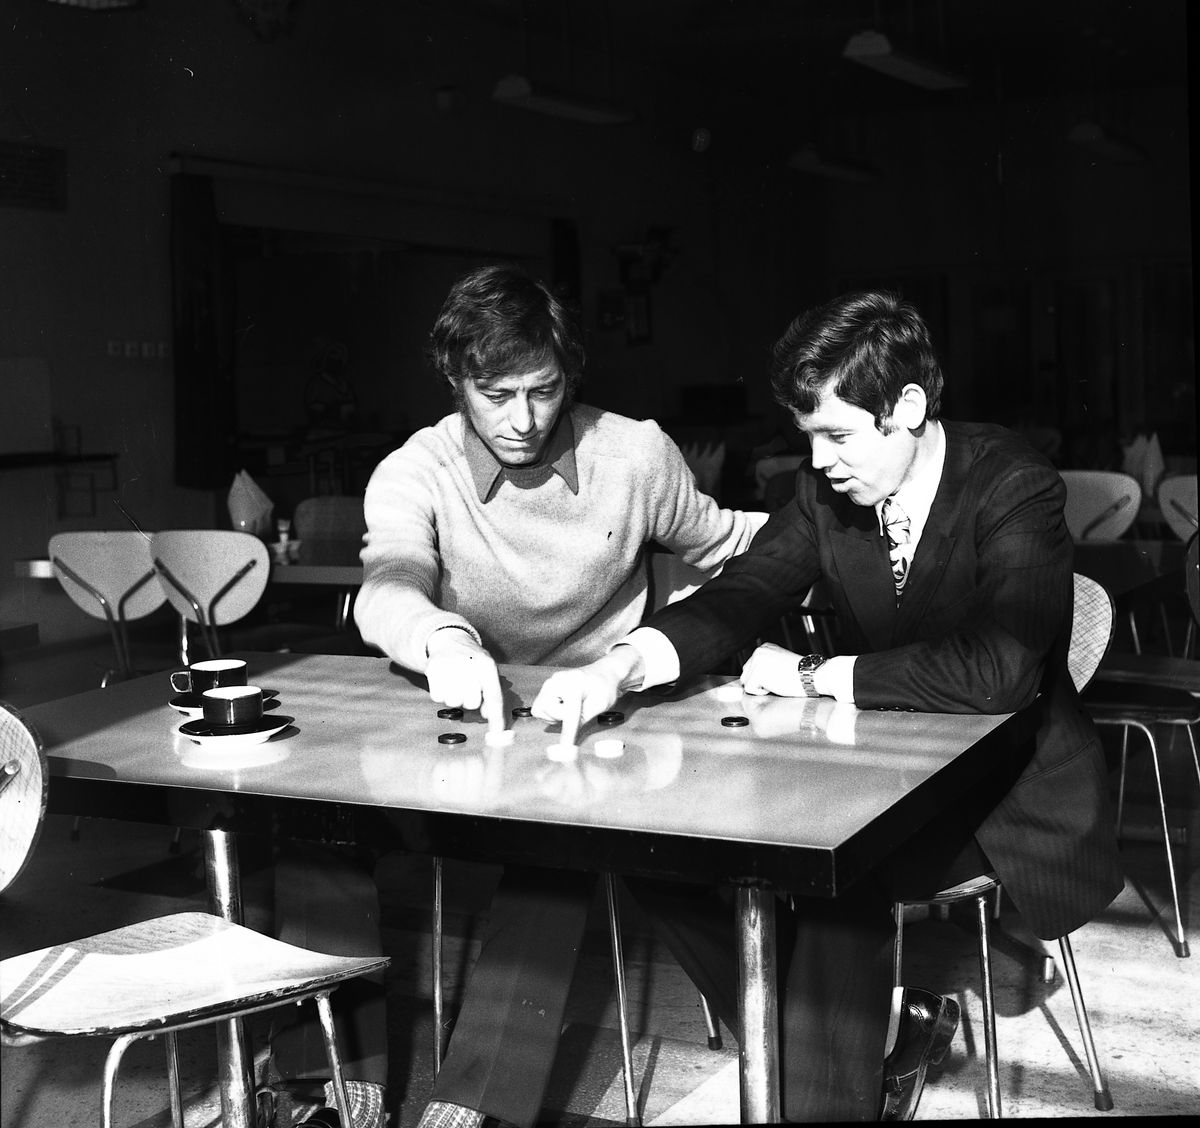 54 de ani de la „cel mai frumos moment” al carierei lui Dumitrache » Dialog savuros cu Ioan Chirilă: „Beau mai puțin decât englezii şi citesc mai mult decât francezii”